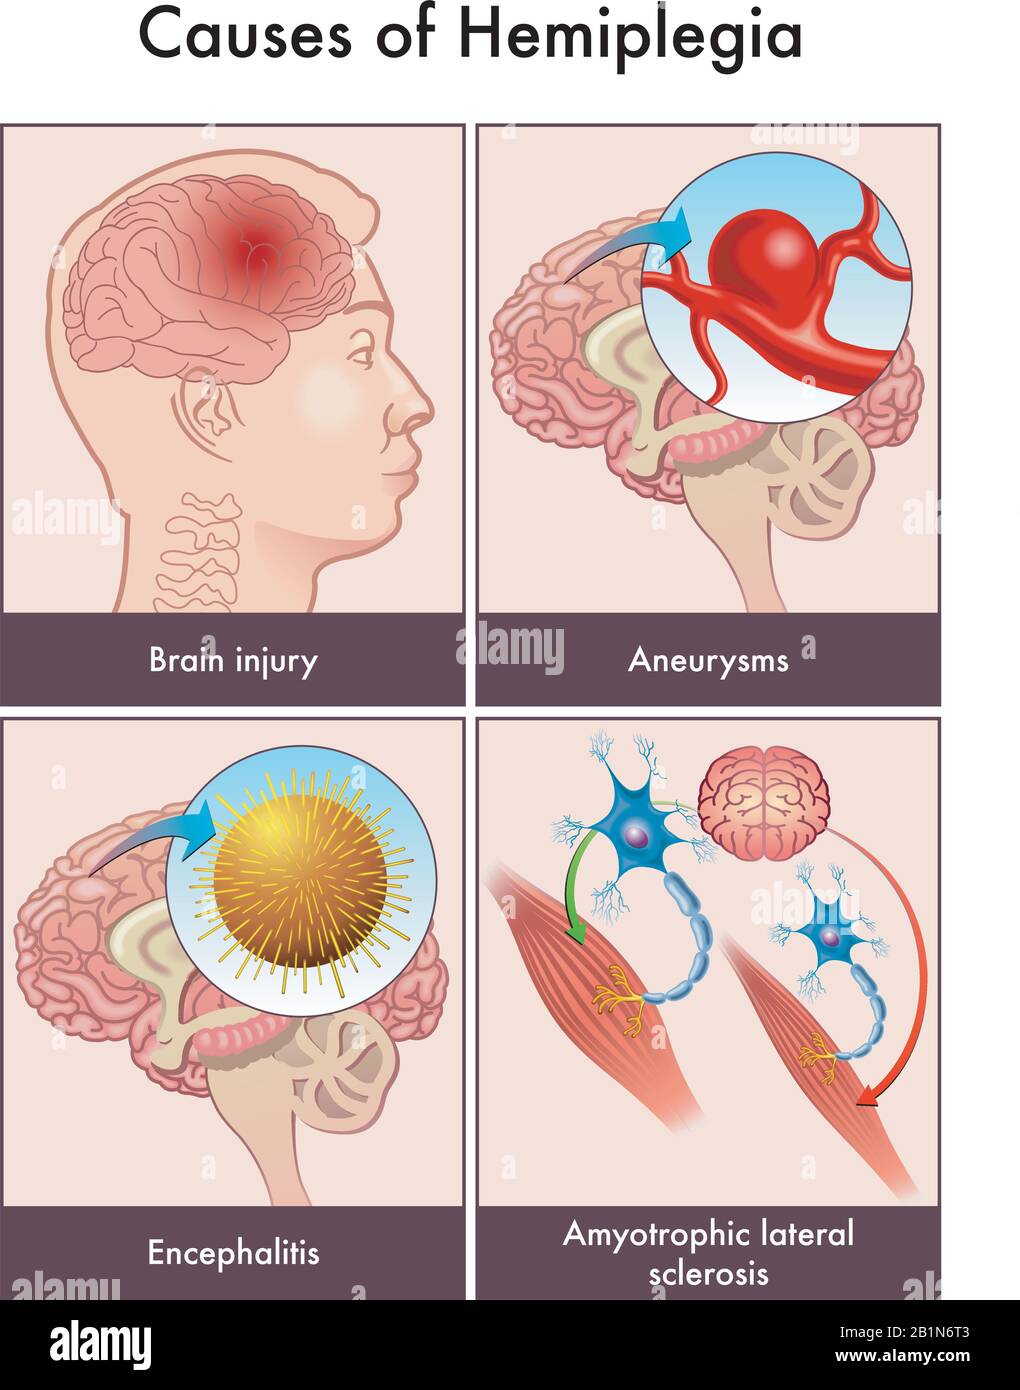 Illustrazione medica delle cause dell'emiplegia, tra cui lesioni cerebrali, aneurismi, encefalite e sclerosi laterale amiotrofica. Illustrazione Vettoriale